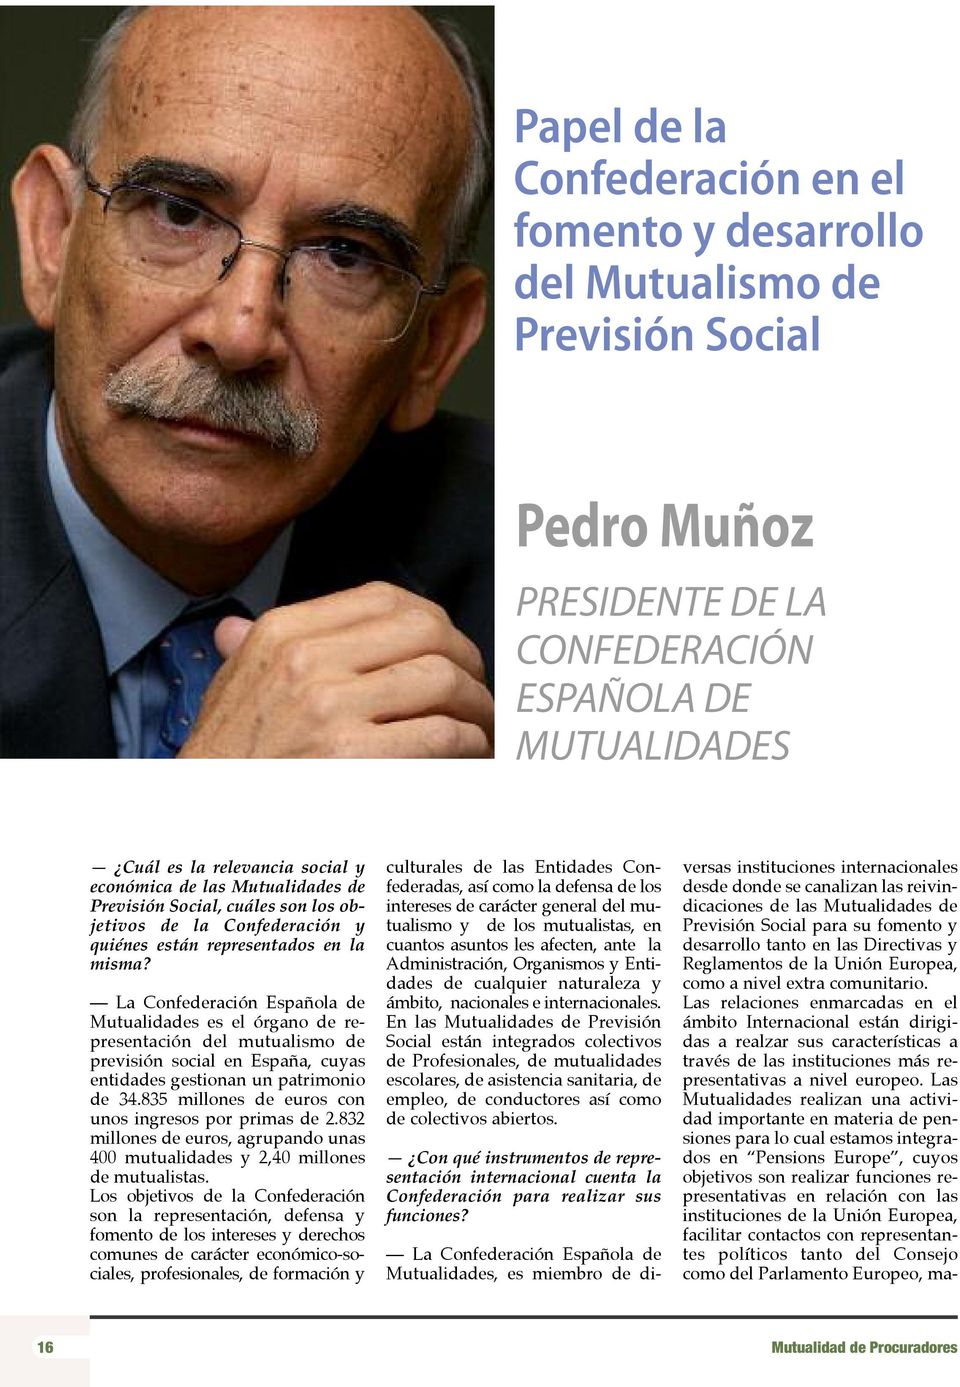 La Confederación Española de Mutualidades es el órgano de representación del mutualismo de previsión social en España, cuyas entidades gestionan un patrimonio de 34.